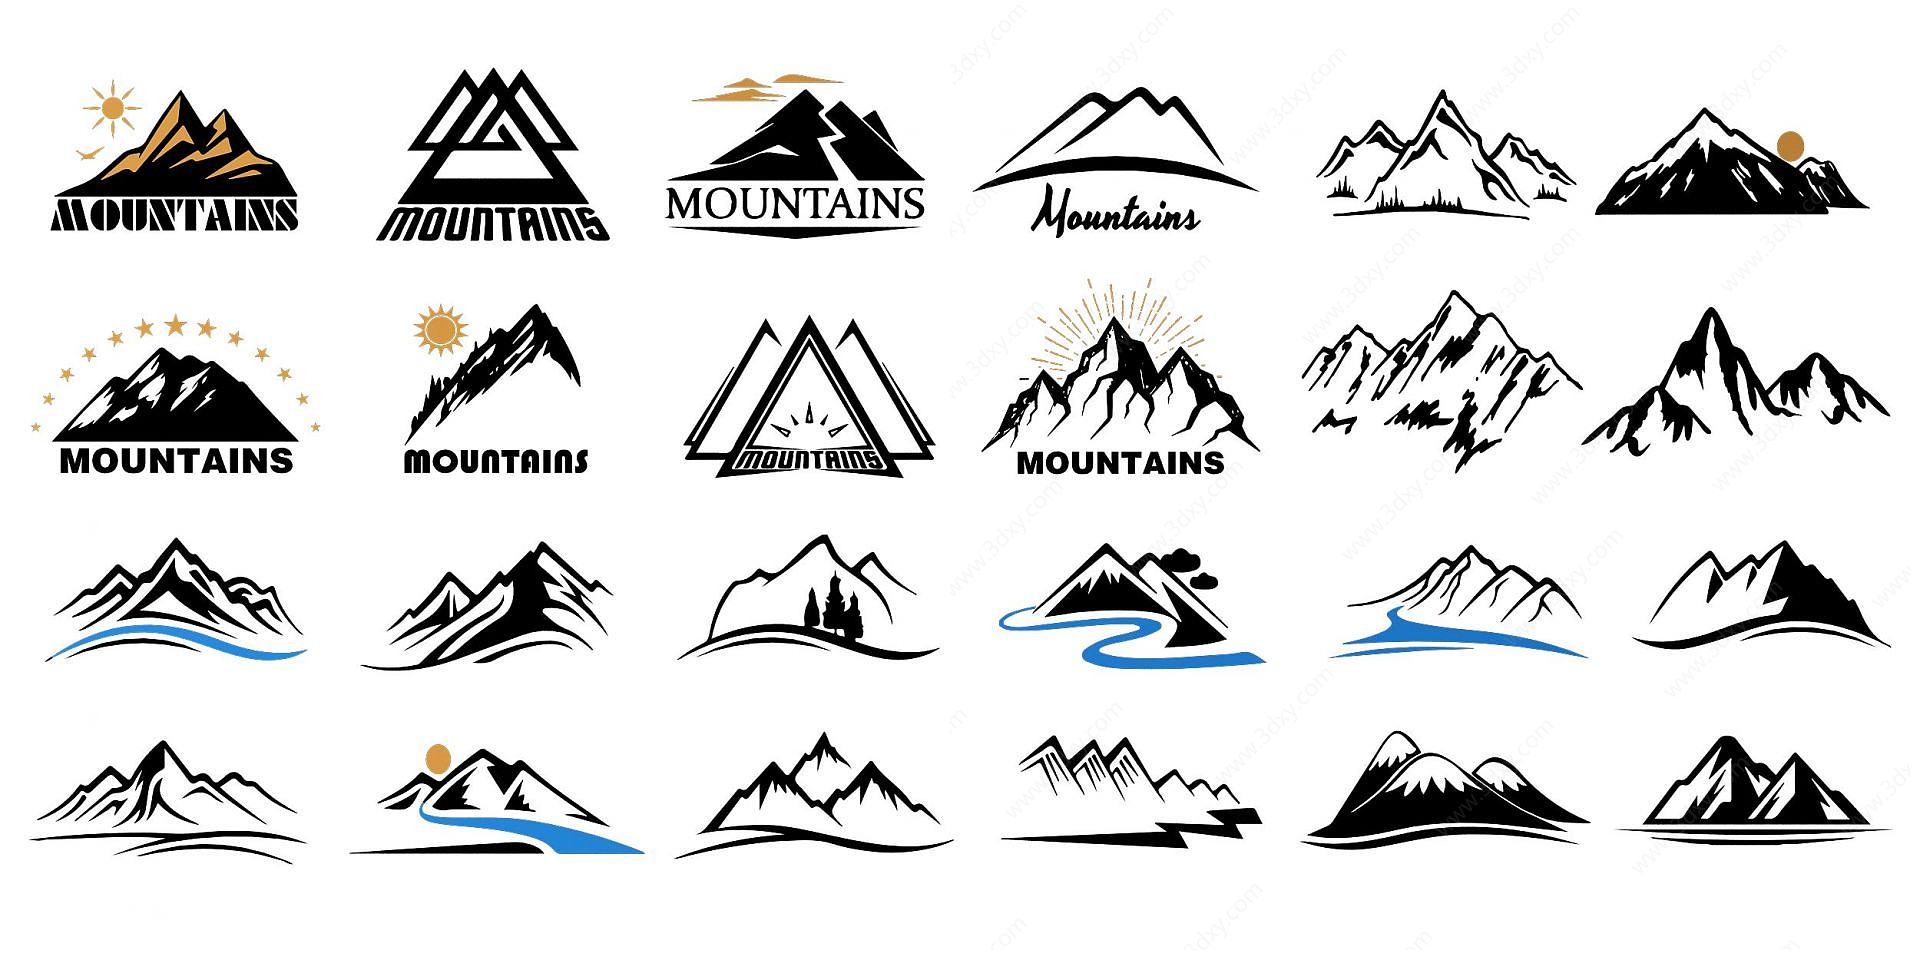 模型3d山剪影模型3d山形石头模型3d山形图案模型3d山形线条模型3d山